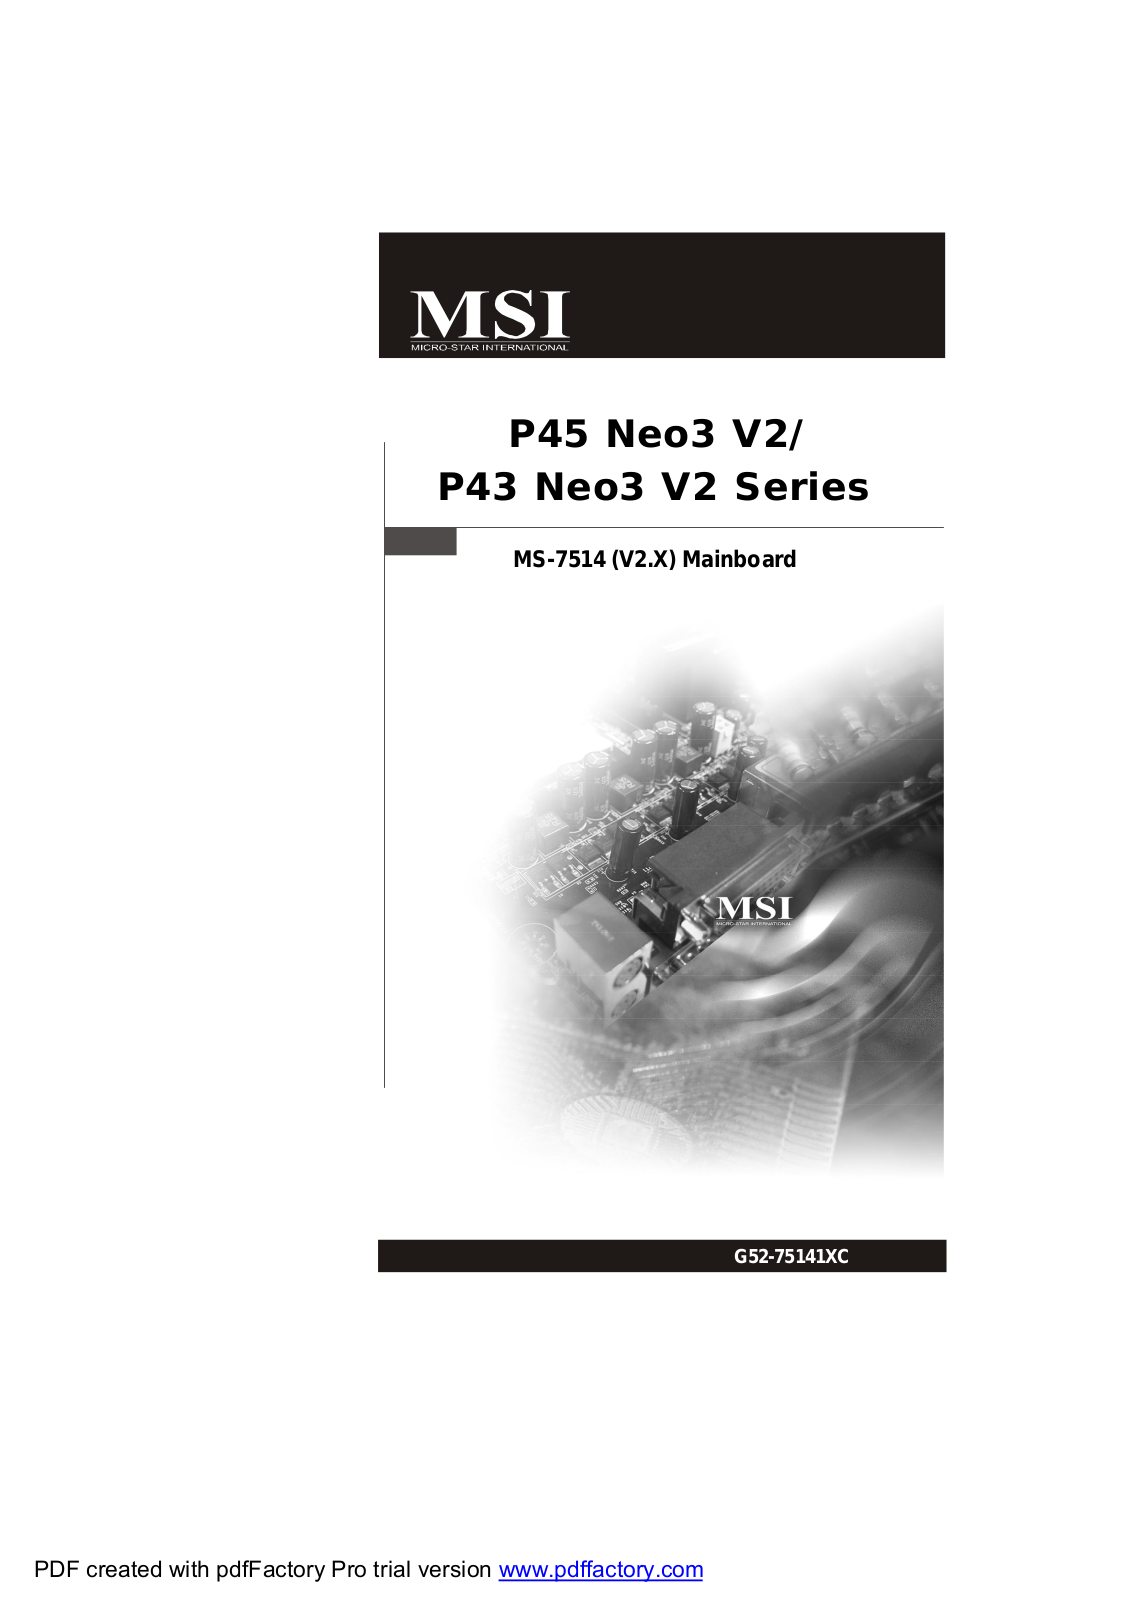 Msi P45 Neo3 V2 series, P43 Neo3 V2 Series user Manual